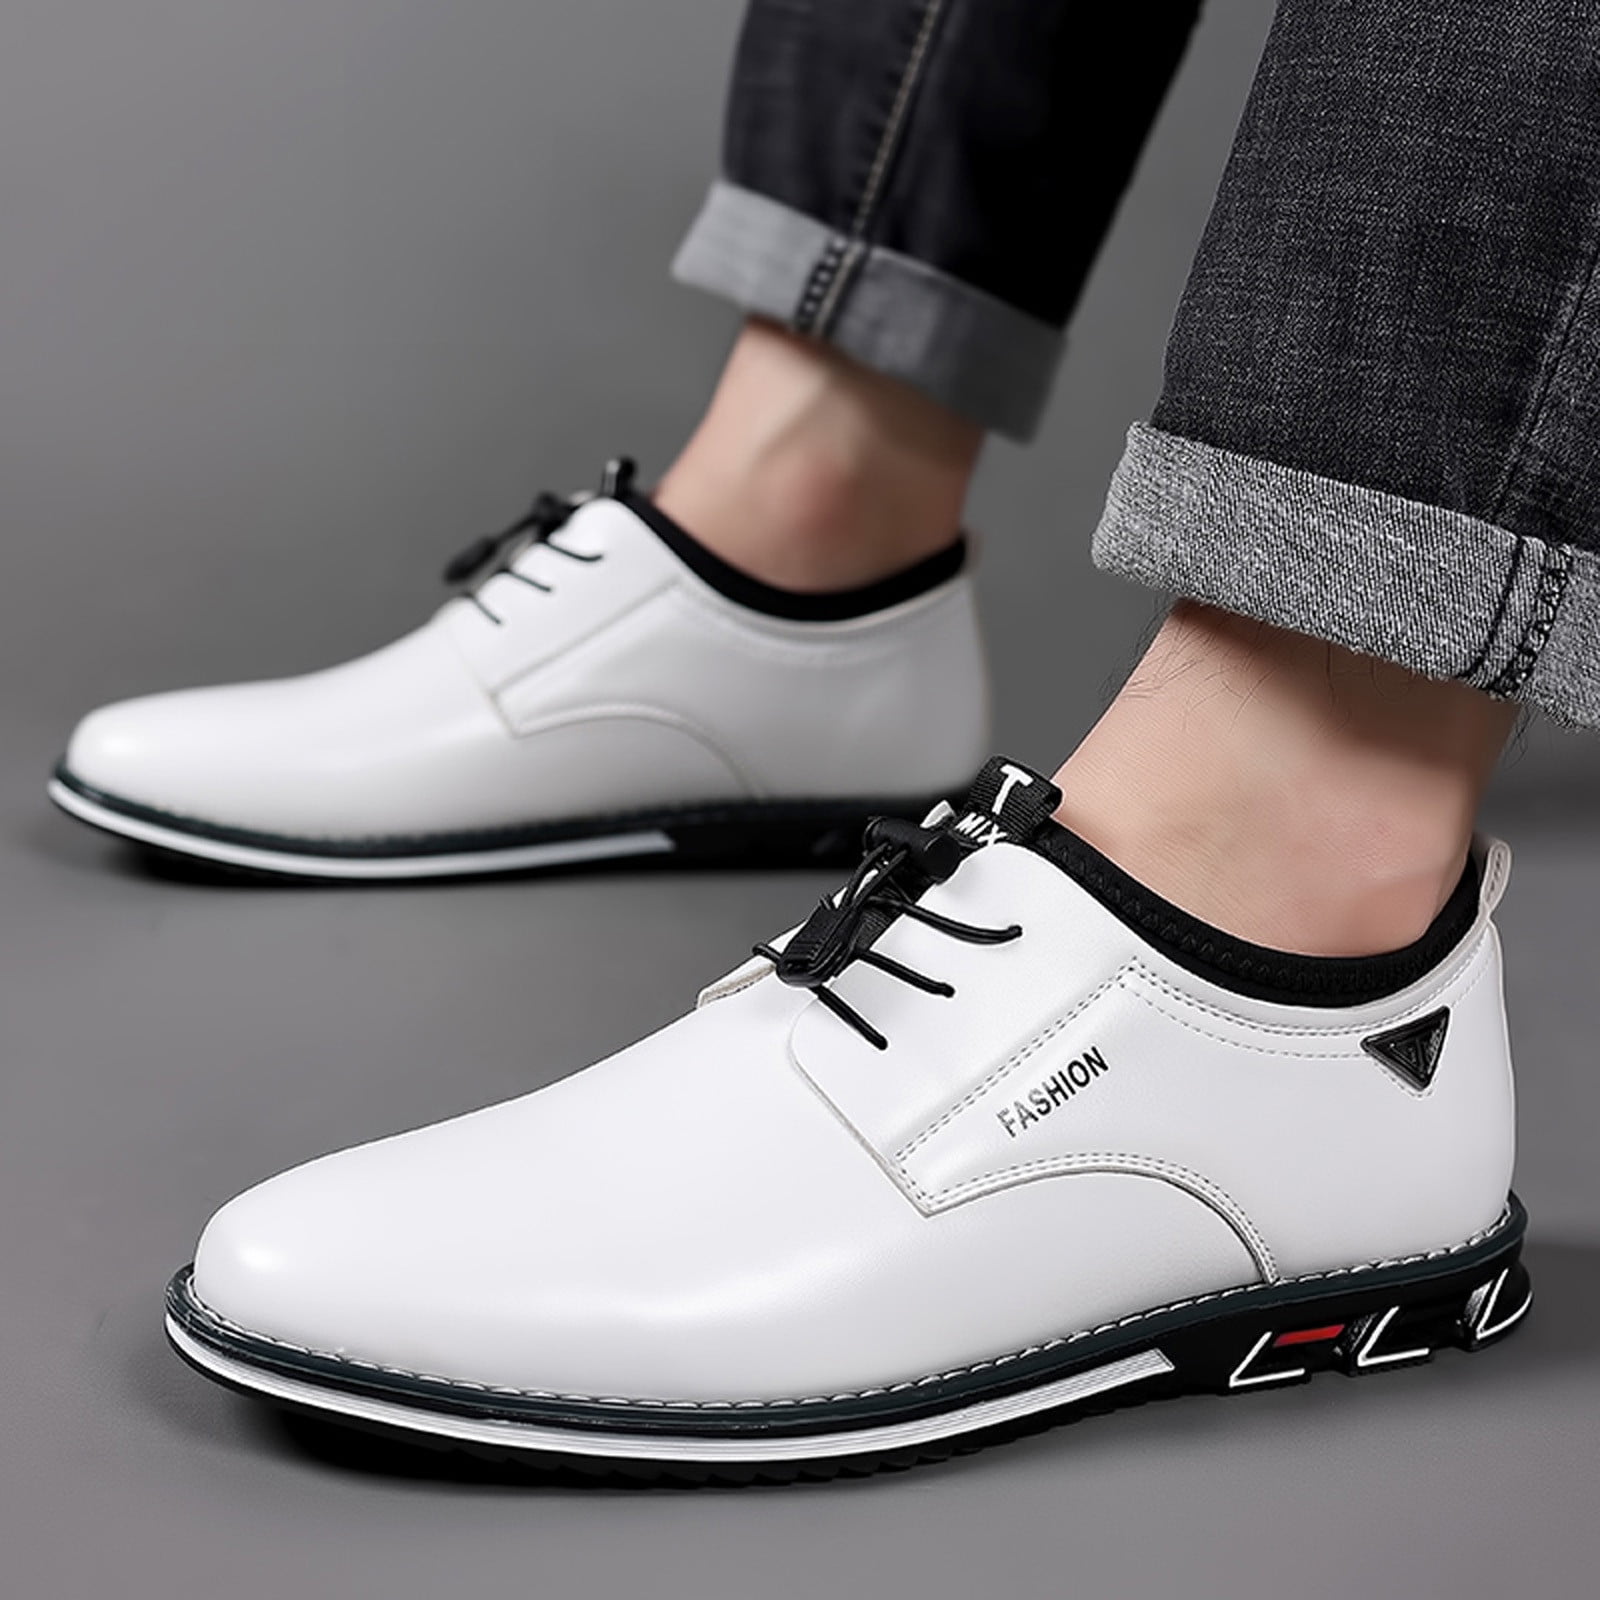 size 13 men’s dress shoes